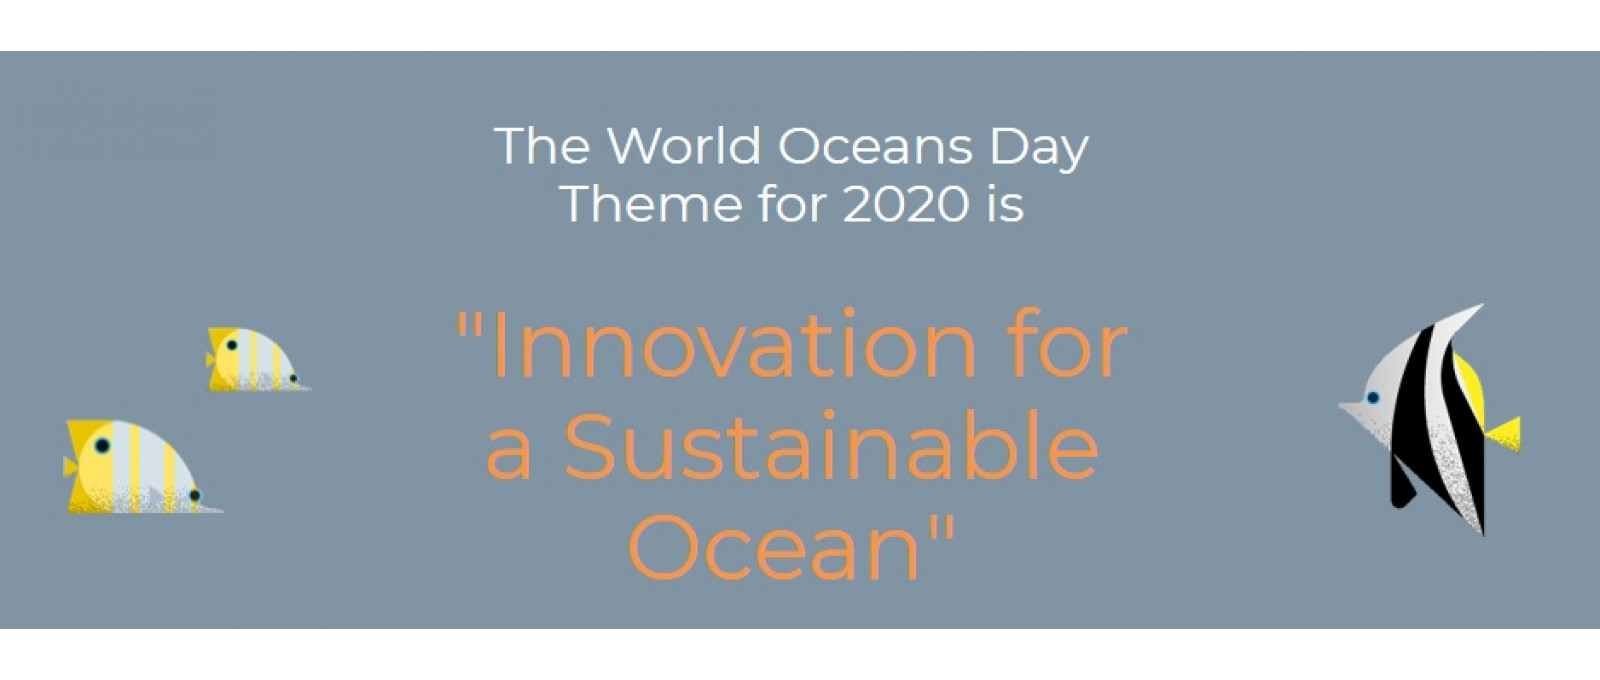 Chủ đề chính ngày Đại dương Thế giới năm 2020